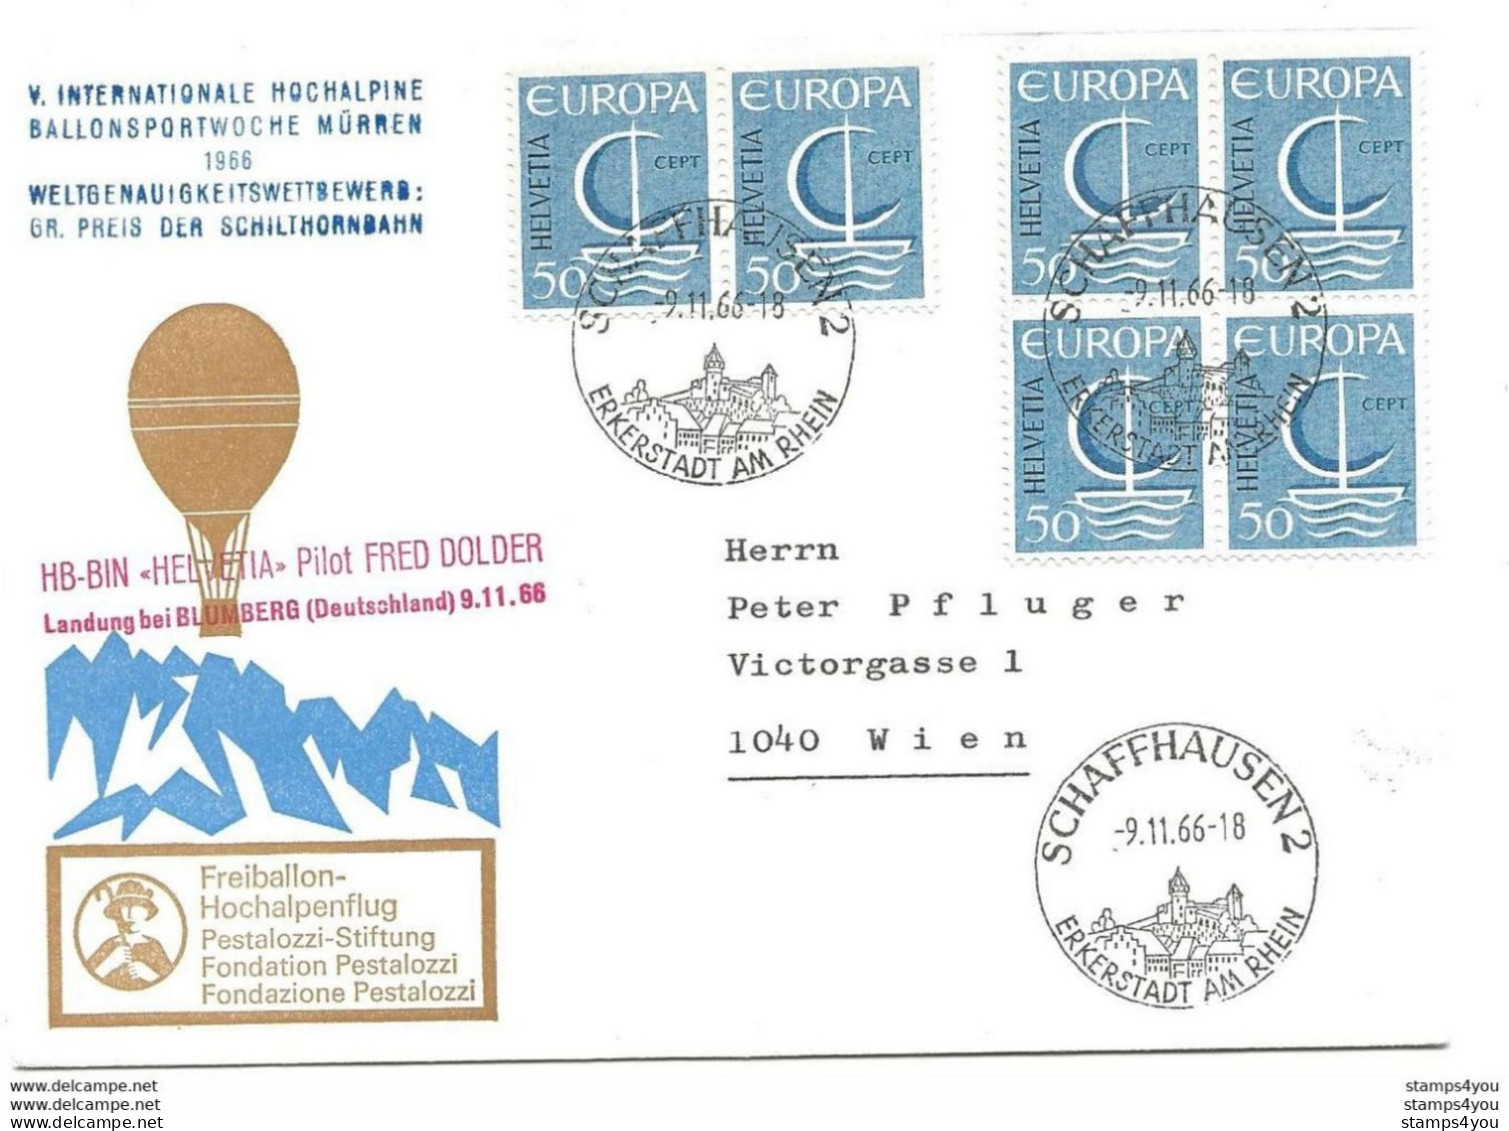 245 - 14 - Enveloppe Suisse Vol Ballon "Hochalpine Ballonsportwoche Mürren 1966" Affranchissement Timbres Europa - Europäischer Gedanke